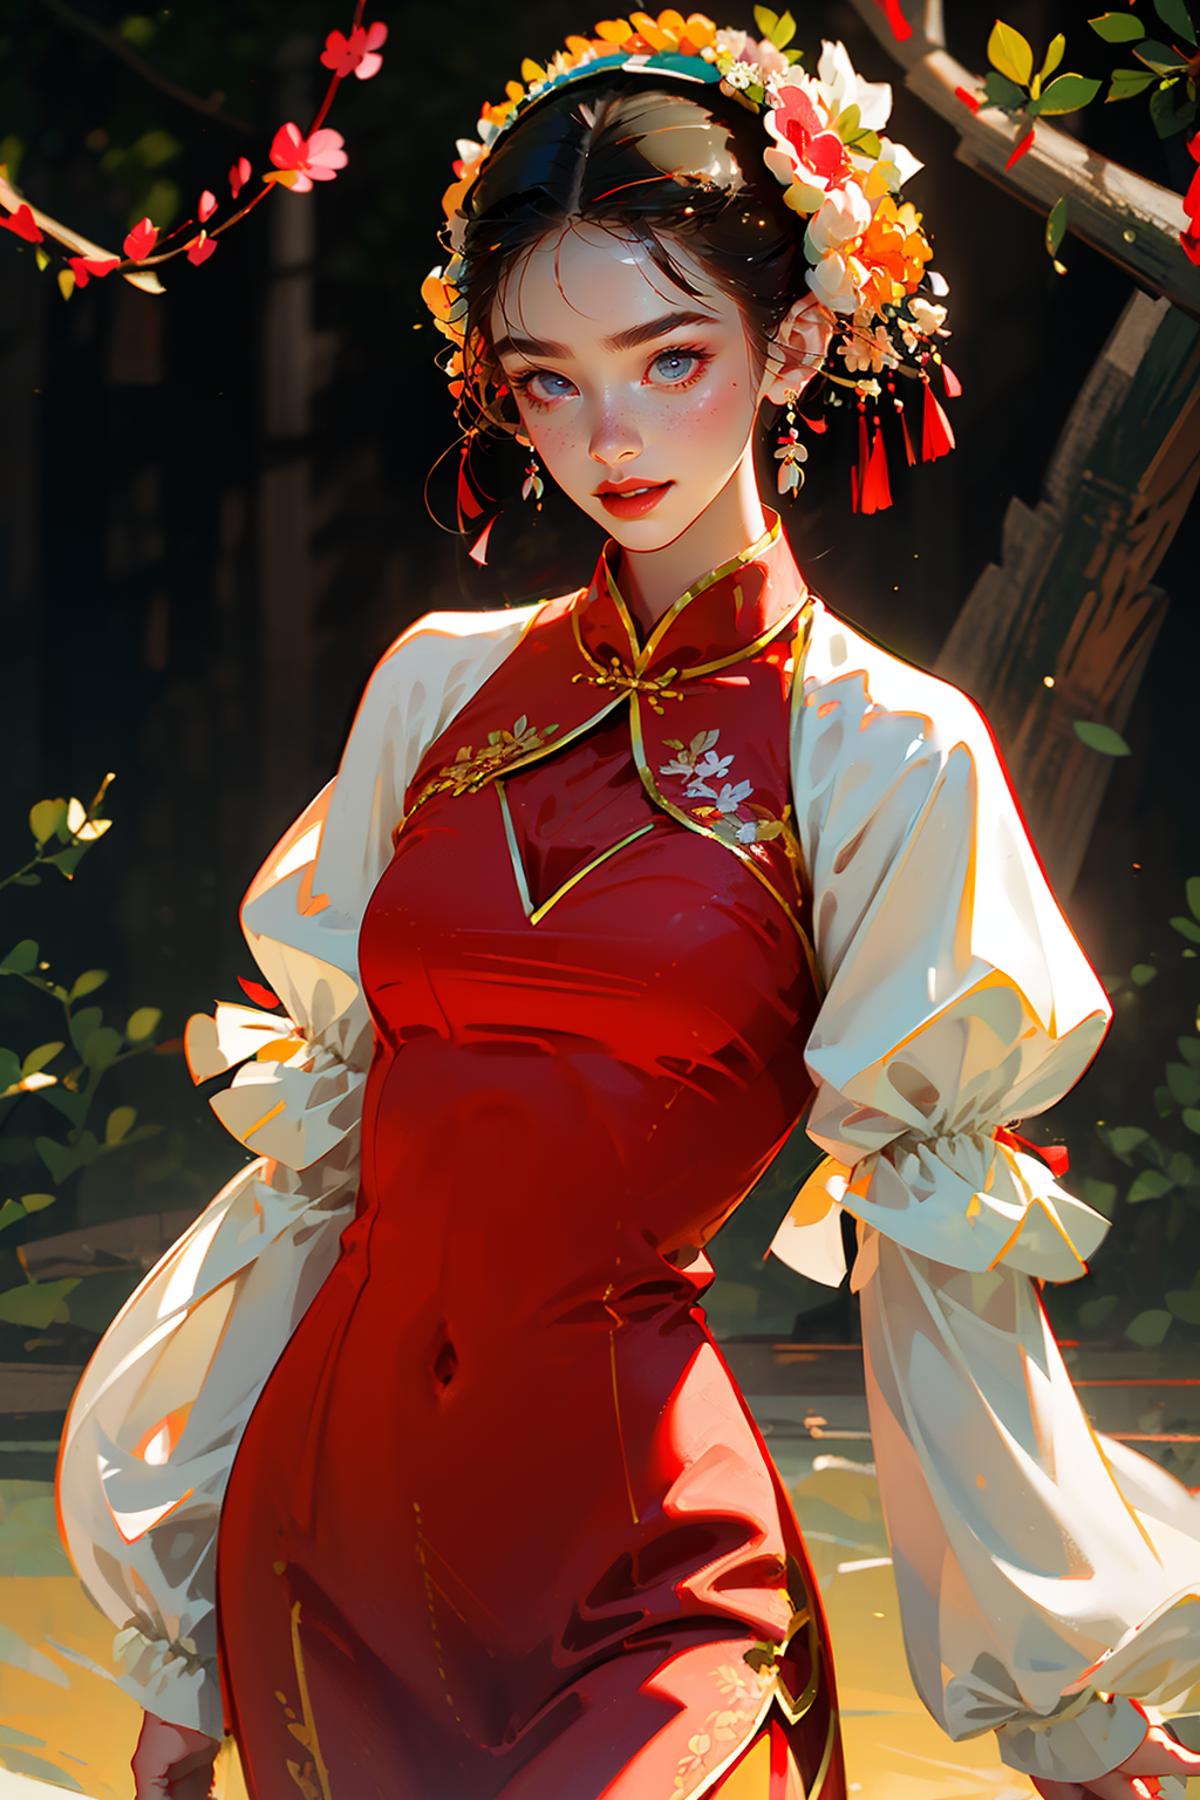 浔埔女-簪花围头饰 | Xunpu-Hairpin flowers | Chinese traditional clothing image by XiongSan